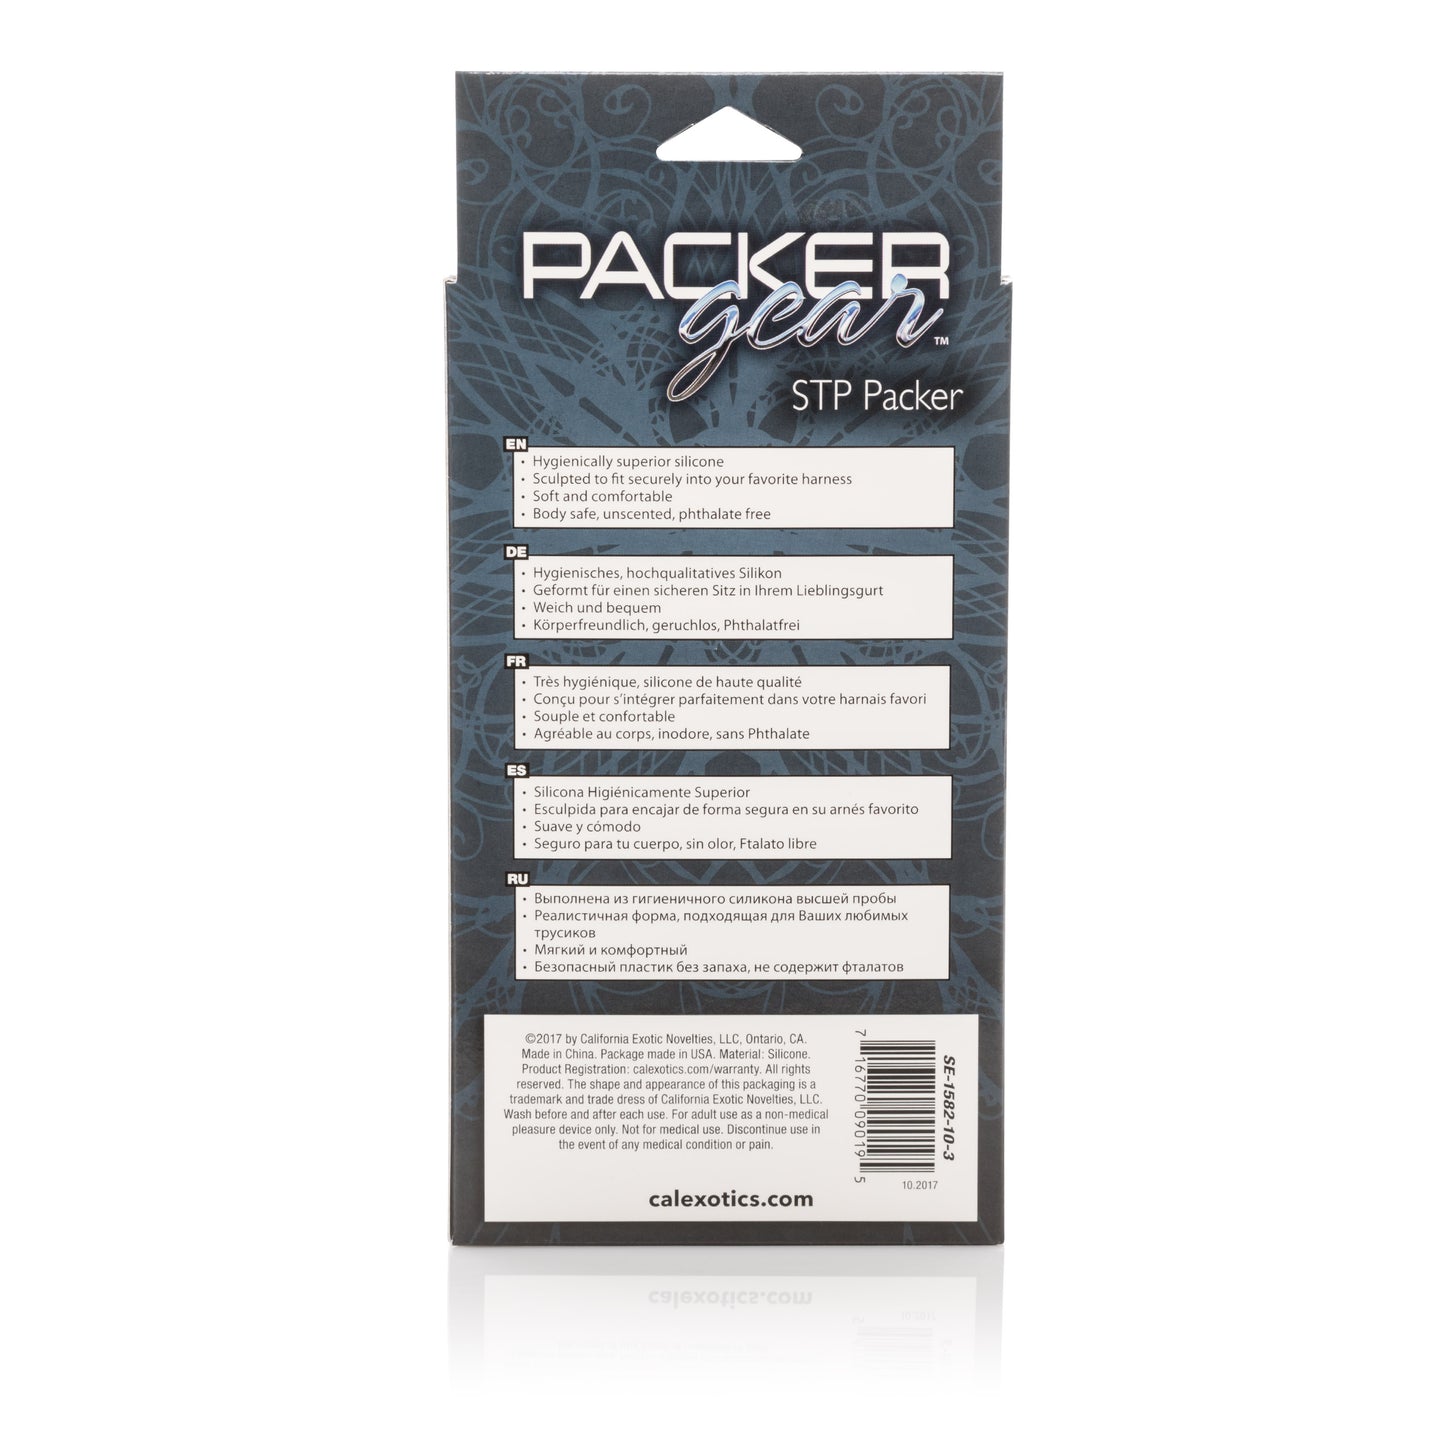 Packer Gear 5 Inch Stp Packer - Brown